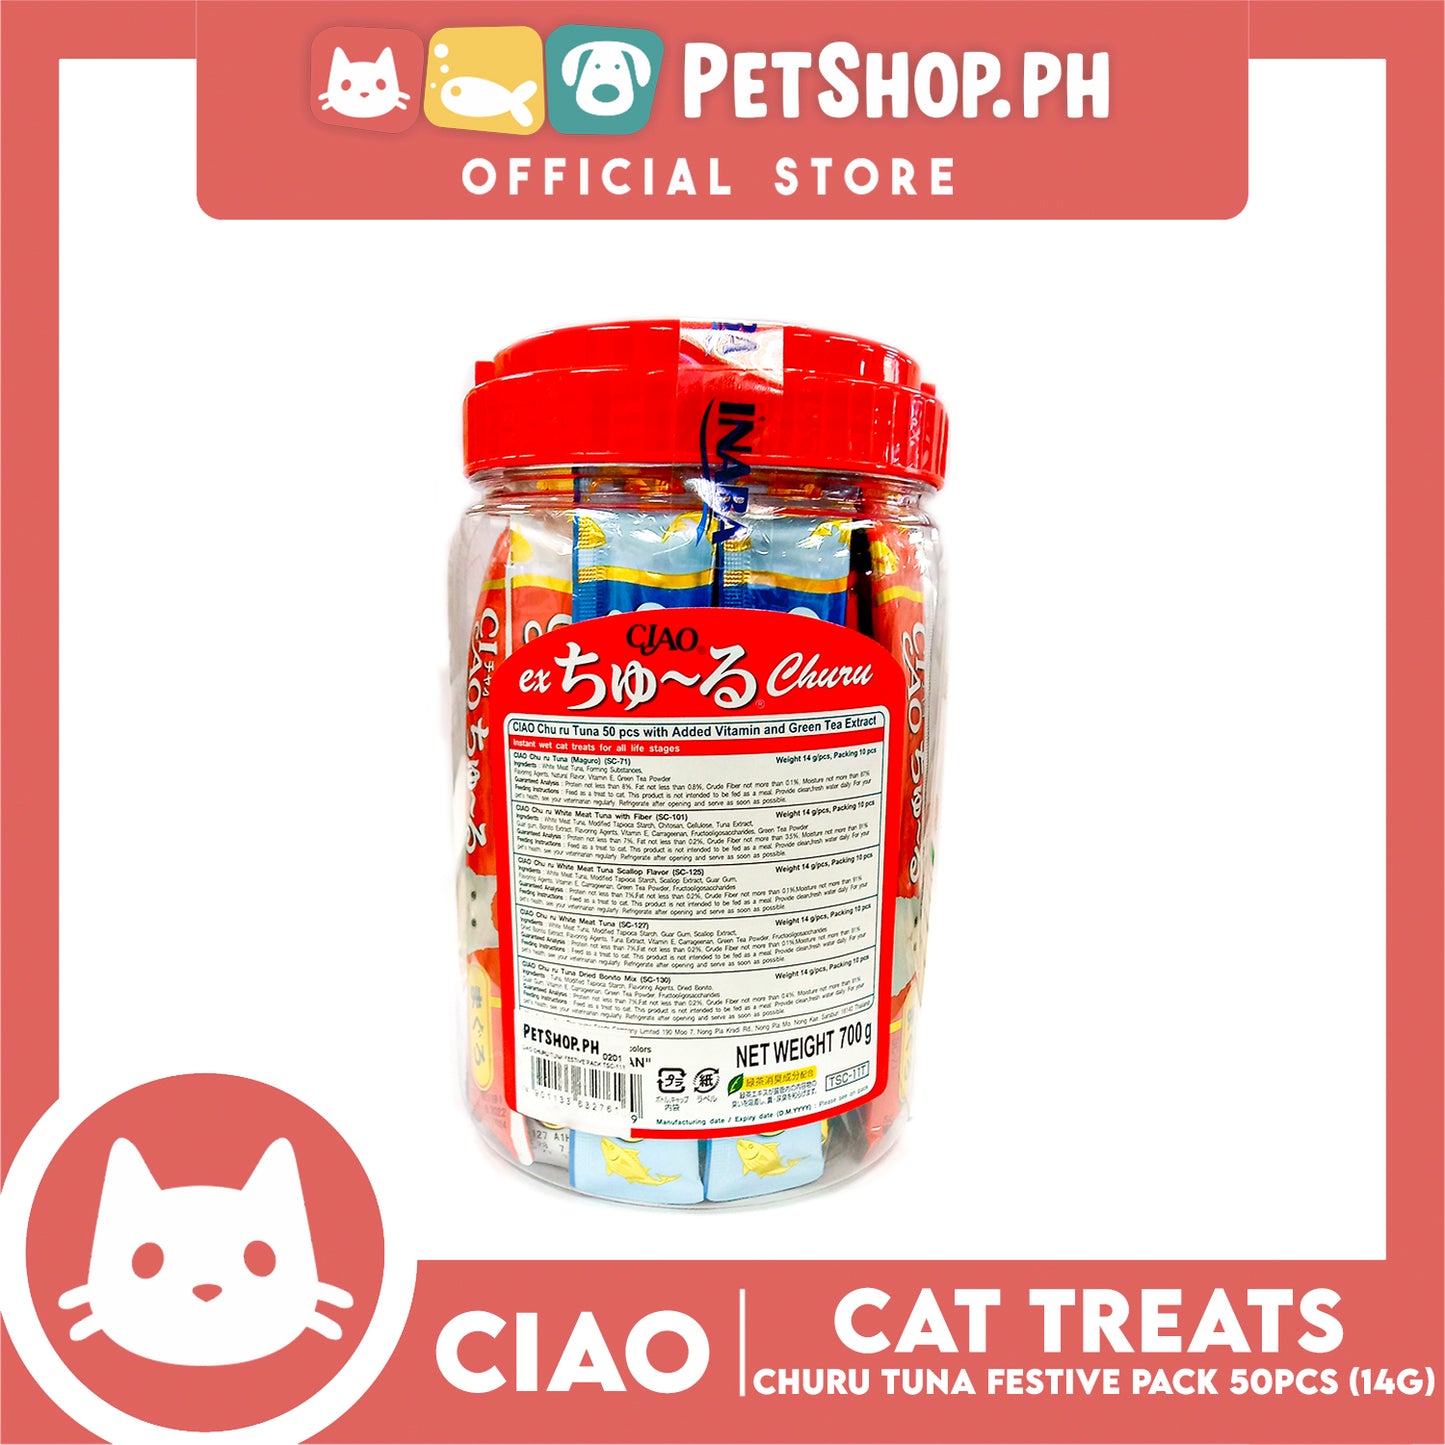 Ciao Churu Tuna Festive Pack Jar Variety Flavors, Cat Treats (TSC-11T) 14g x 50pcs